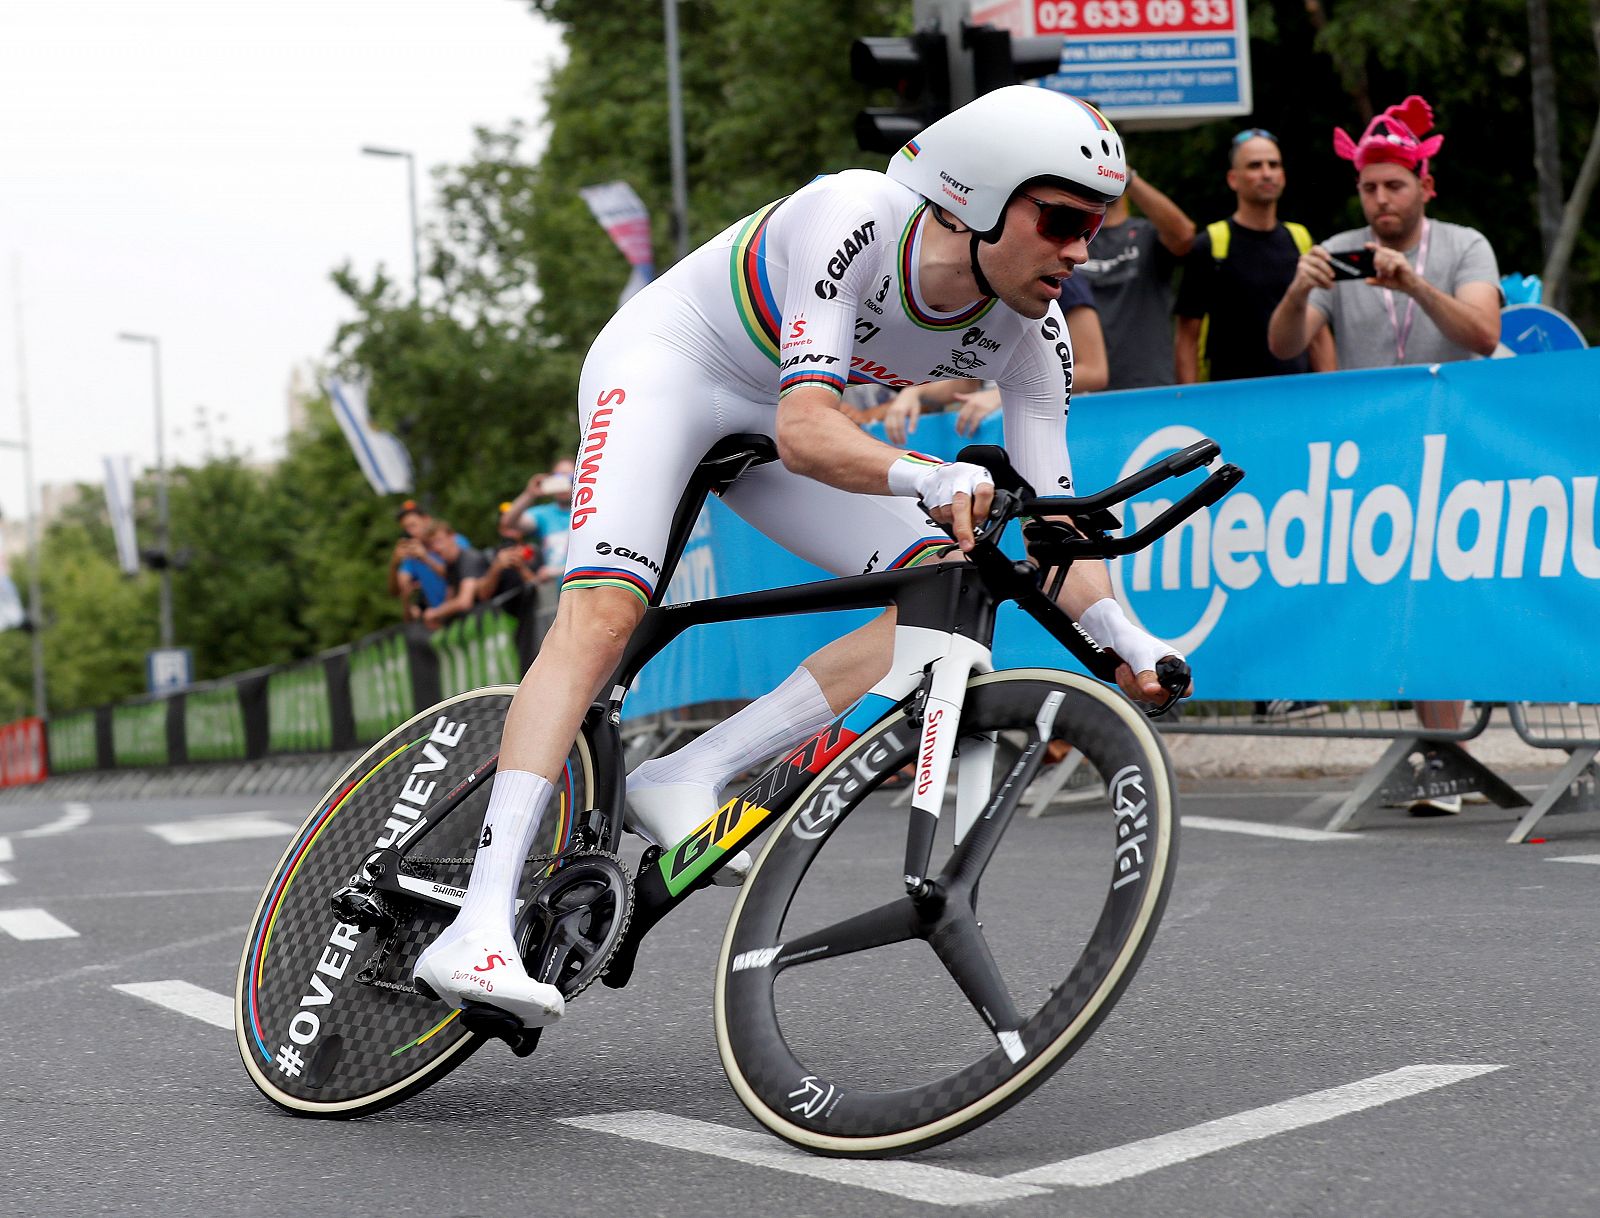 Imagen de Tom Dumoulin en la etapa 1 del Giro de Italia 2018.